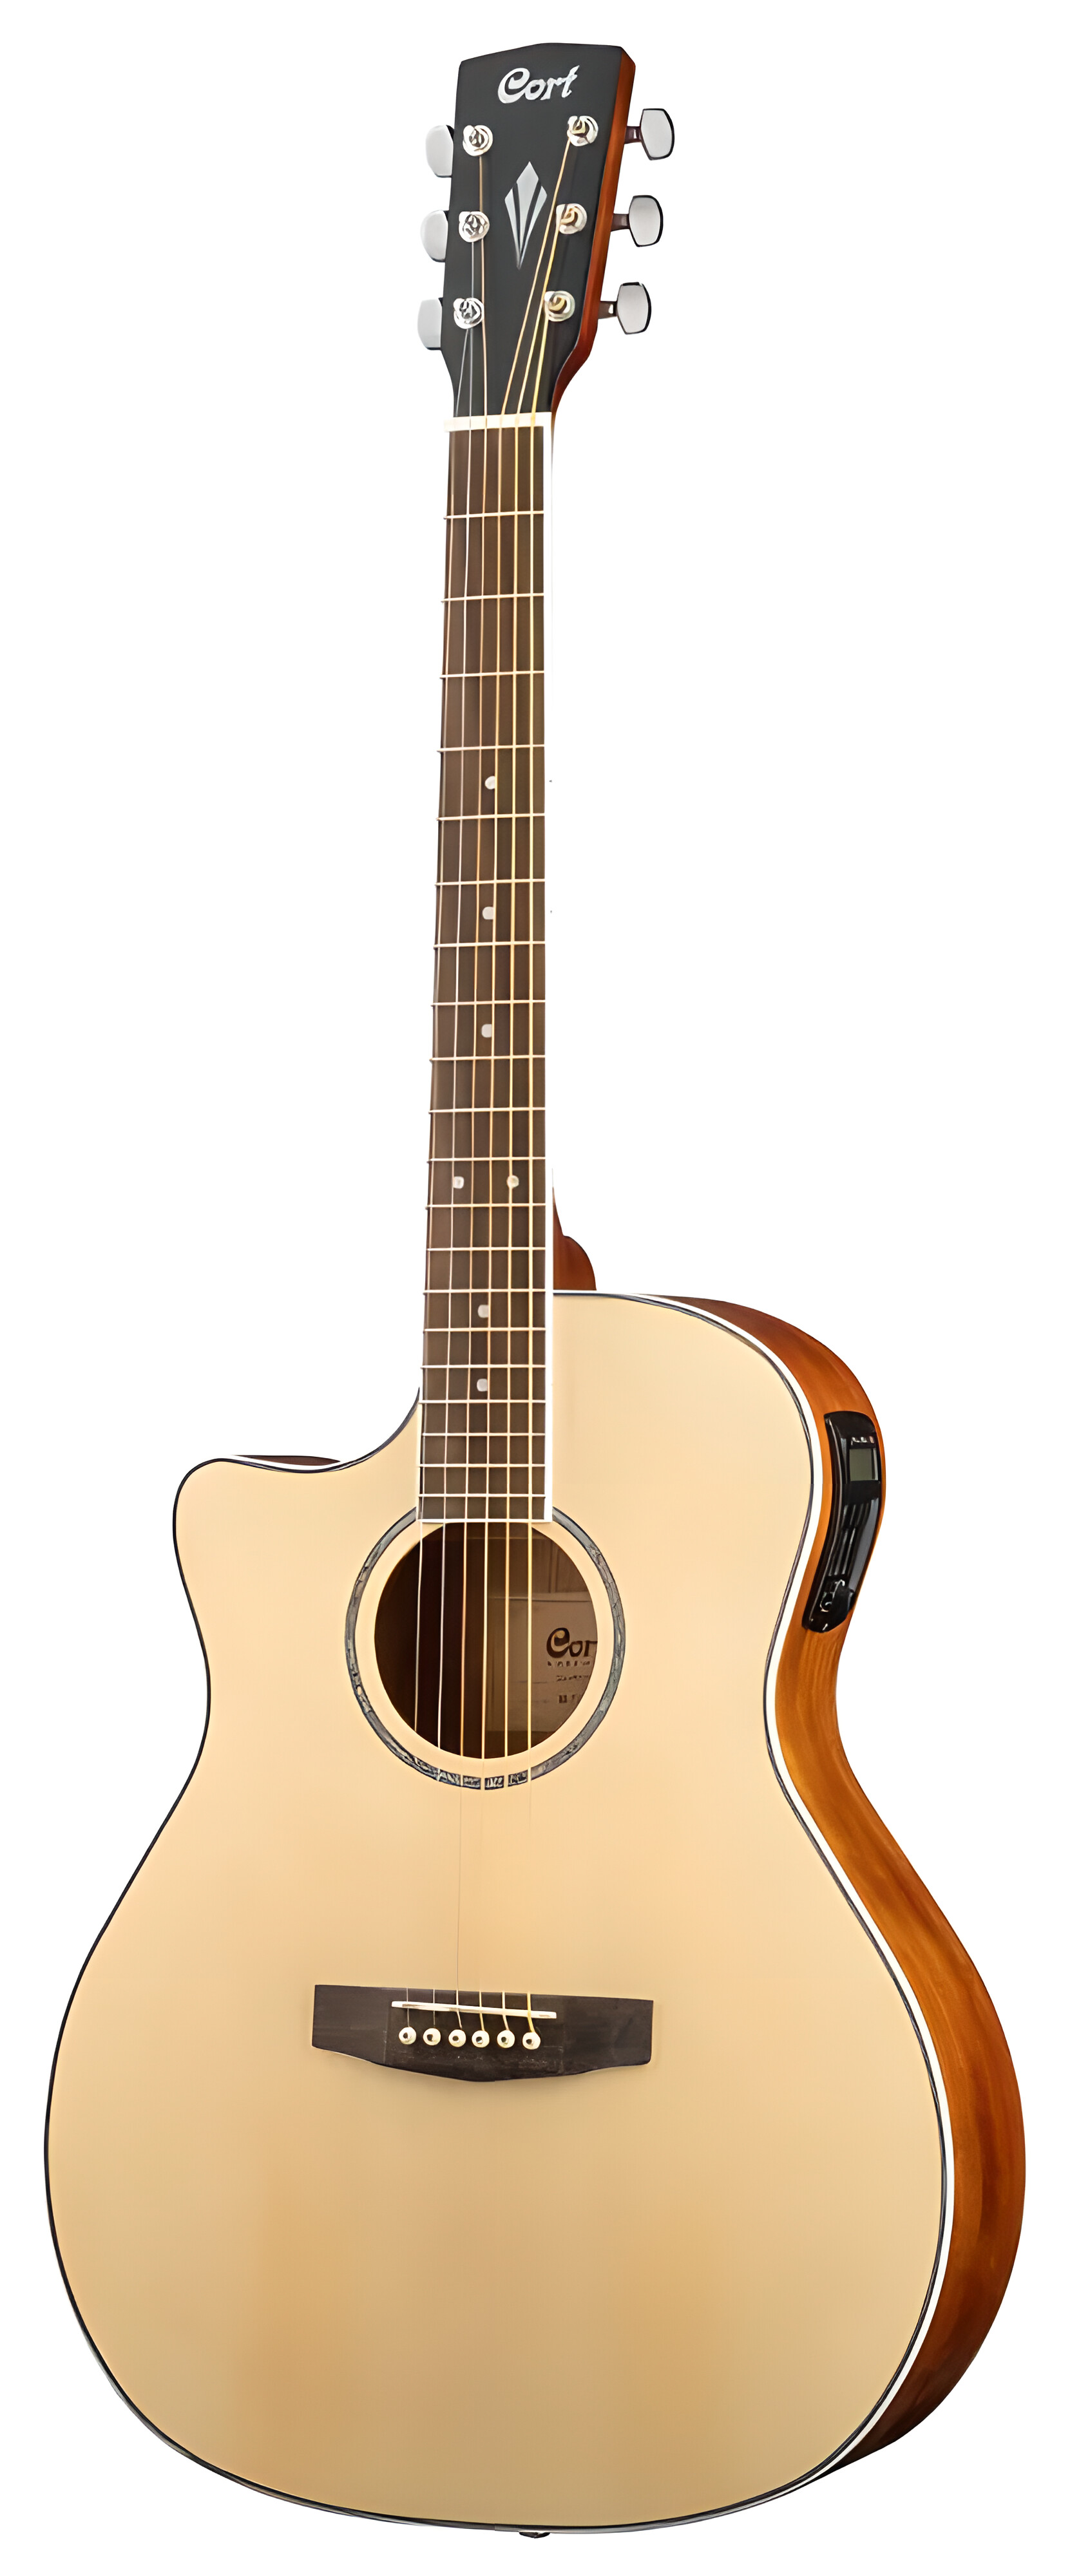 Электроакустические гитары Cort GA-MEDX-LH-OP электроакустические гитары cort gold a8 wcase lb чехол в комплекте